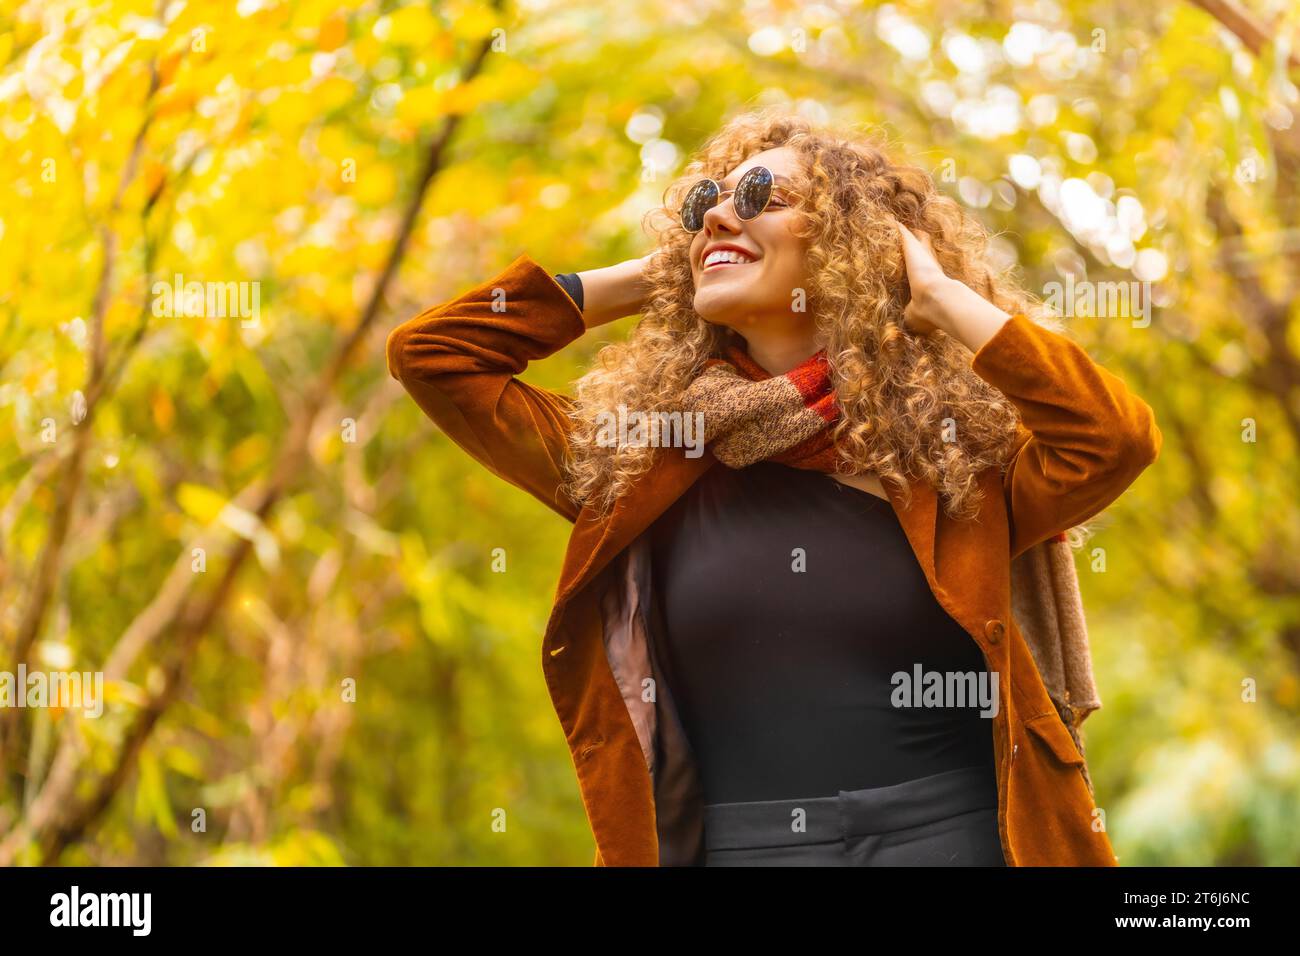 Frau mit Sonnenbrille und lässiger Kleidung, die im Herbst in einem Park aufblickt Stockfoto